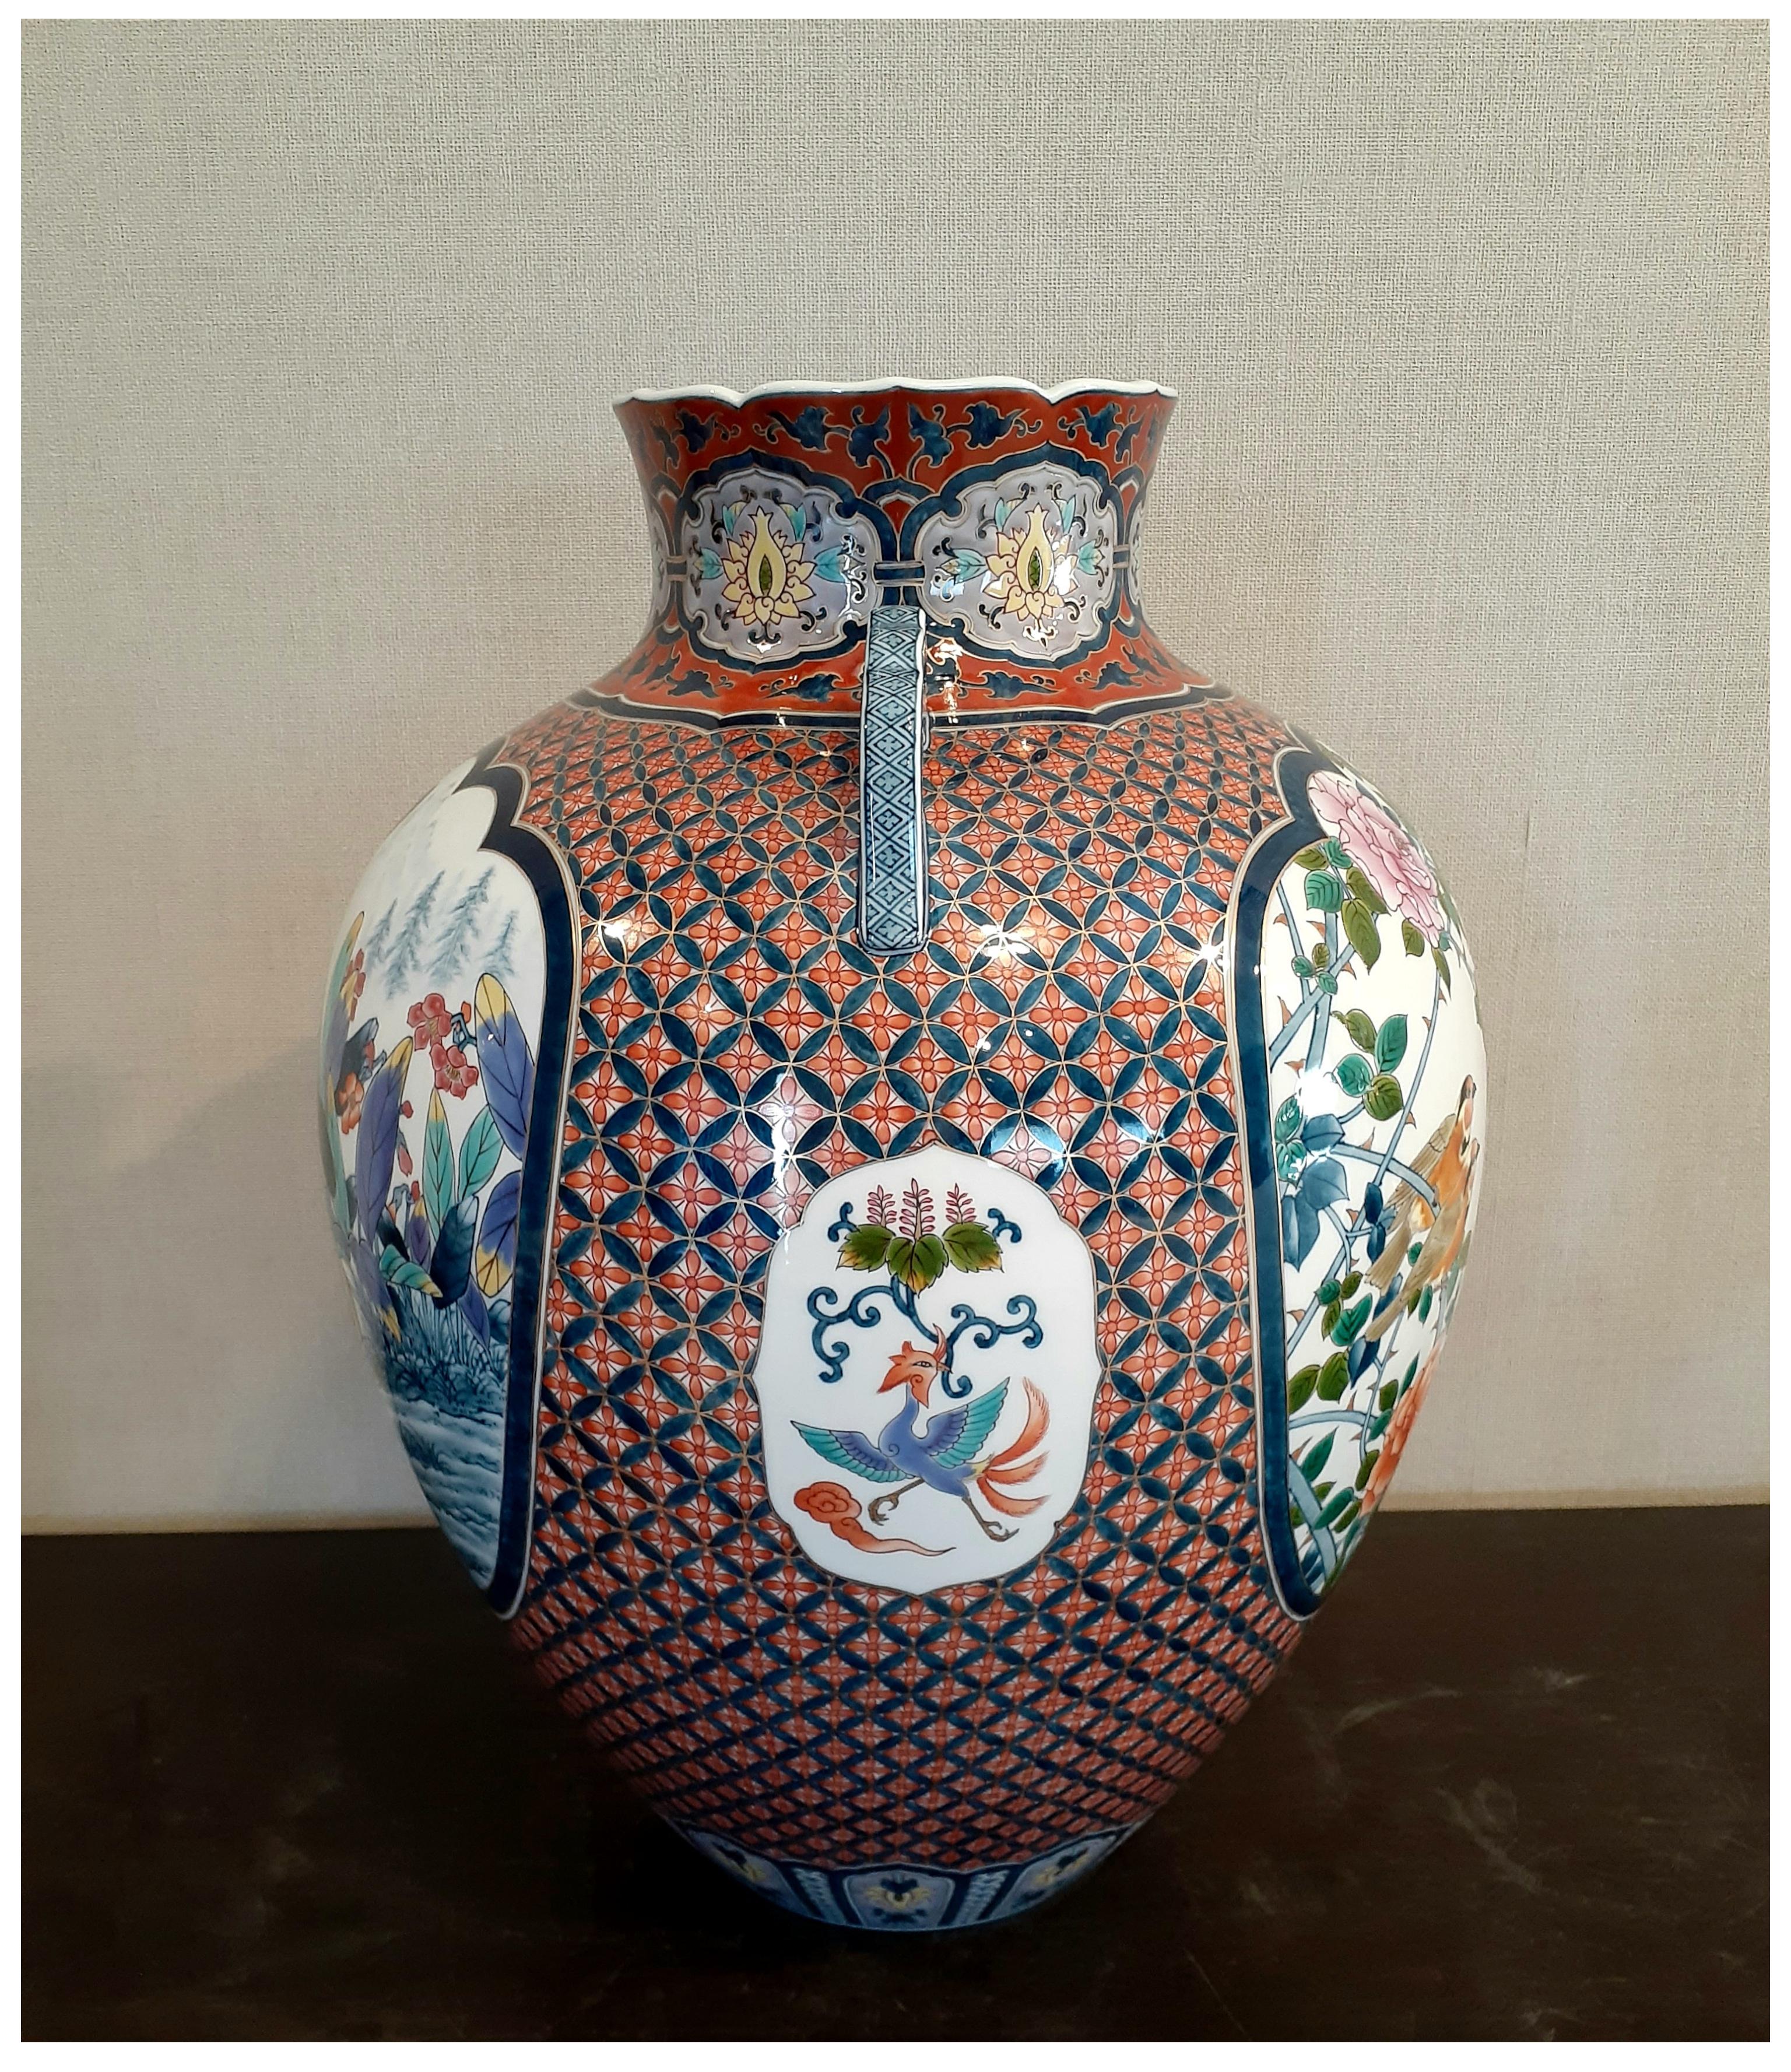 Außergewöhnliche zeitgenössische japanische Vase aus vergoldetem, dekorativem Porzellan in Museumsqualität, aufwendig in Blau, Rot, Grün, Gelb und Orange gestaltet, auf einem atemberaubend geformten Korpus mit zwei anmutigen Henkeln. Ein prächtiges,